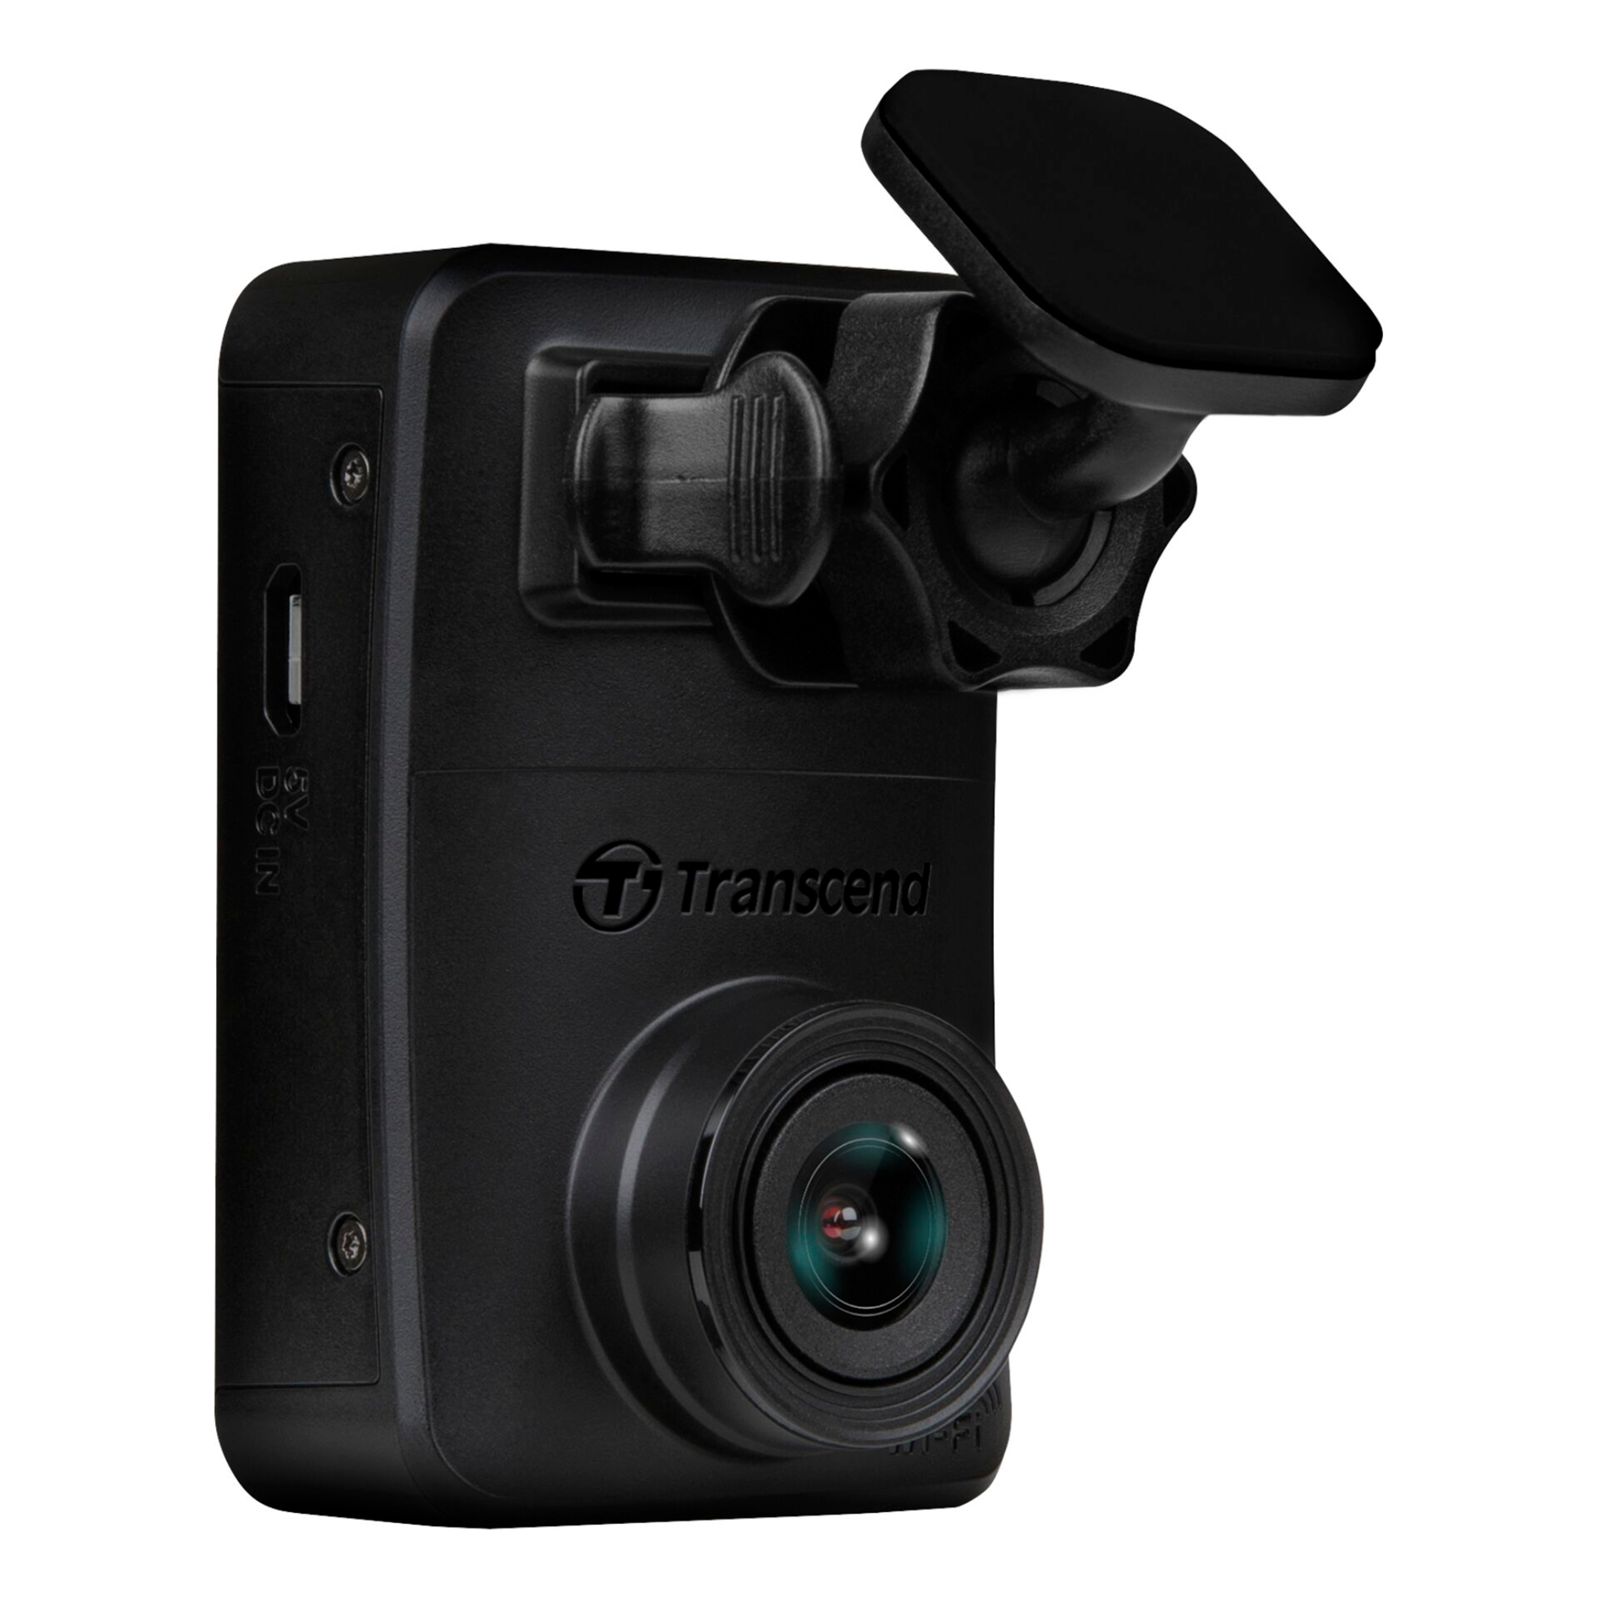 Transcend DrivePro 10 camera incl. 64GB microSDHC